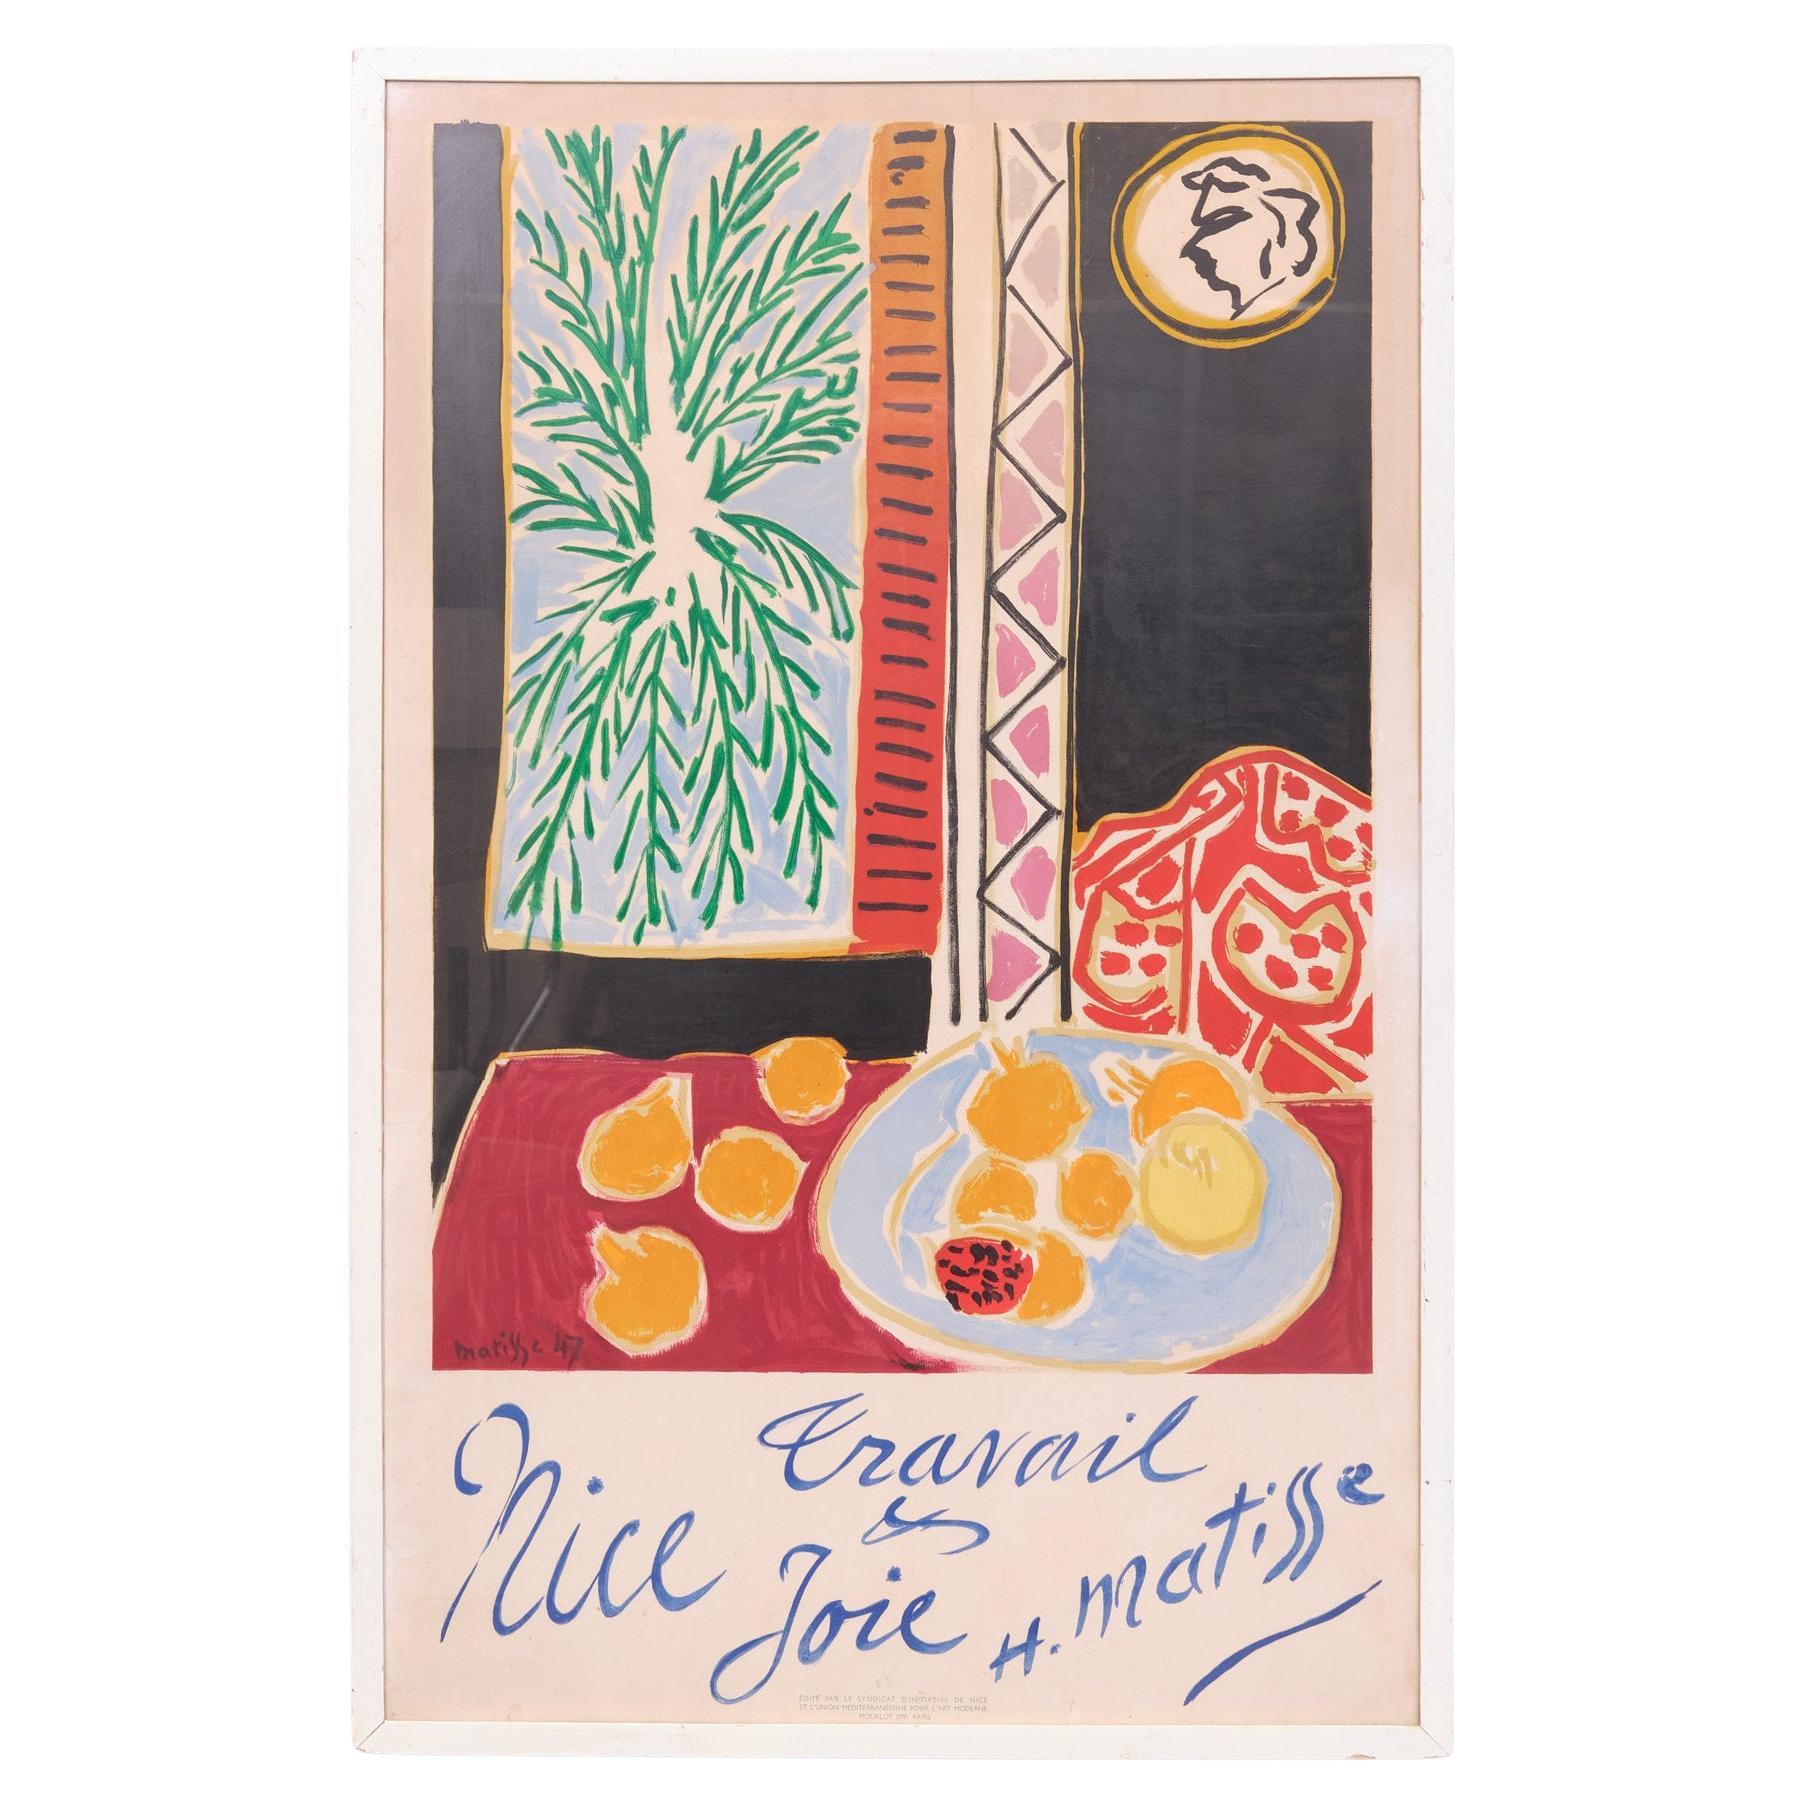 Henri Matisse, Reiseplakat im Vintage-Stil für Nizza, Frankreich, entworfen 1947 